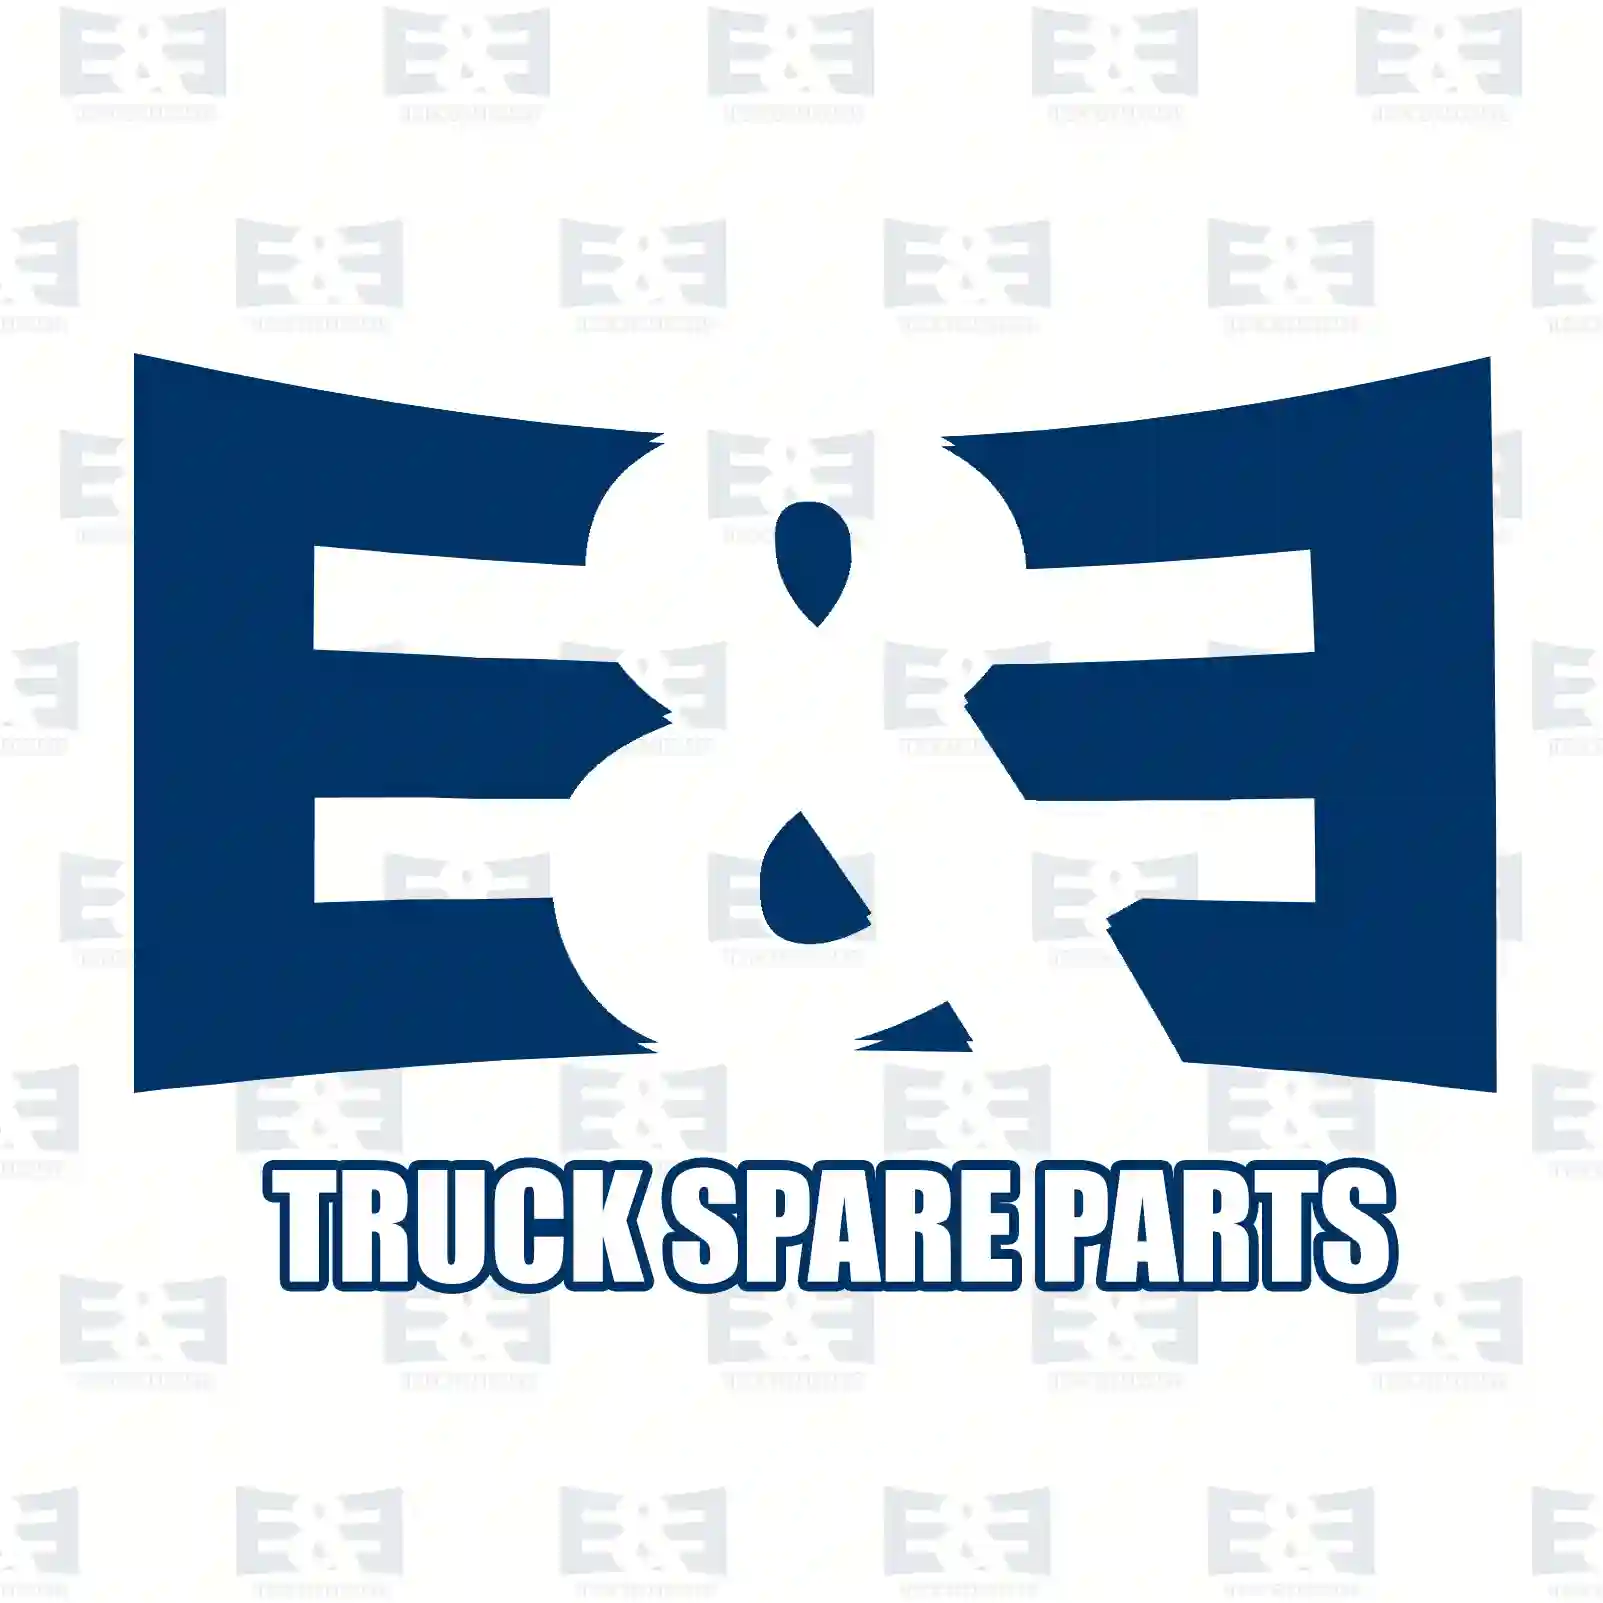 Synchronizer body, 2E2279287, 2112631220, 21126 ||  2E2279287 E&E Truck Spare Parts | Truck Spare Parts, Auotomotive Spare Parts Synchronizer body, 2E2279287, 2112631220, 21126 ||  2E2279287 E&E Truck Spare Parts | Truck Spare Parts, Auotomotive Spare Parts